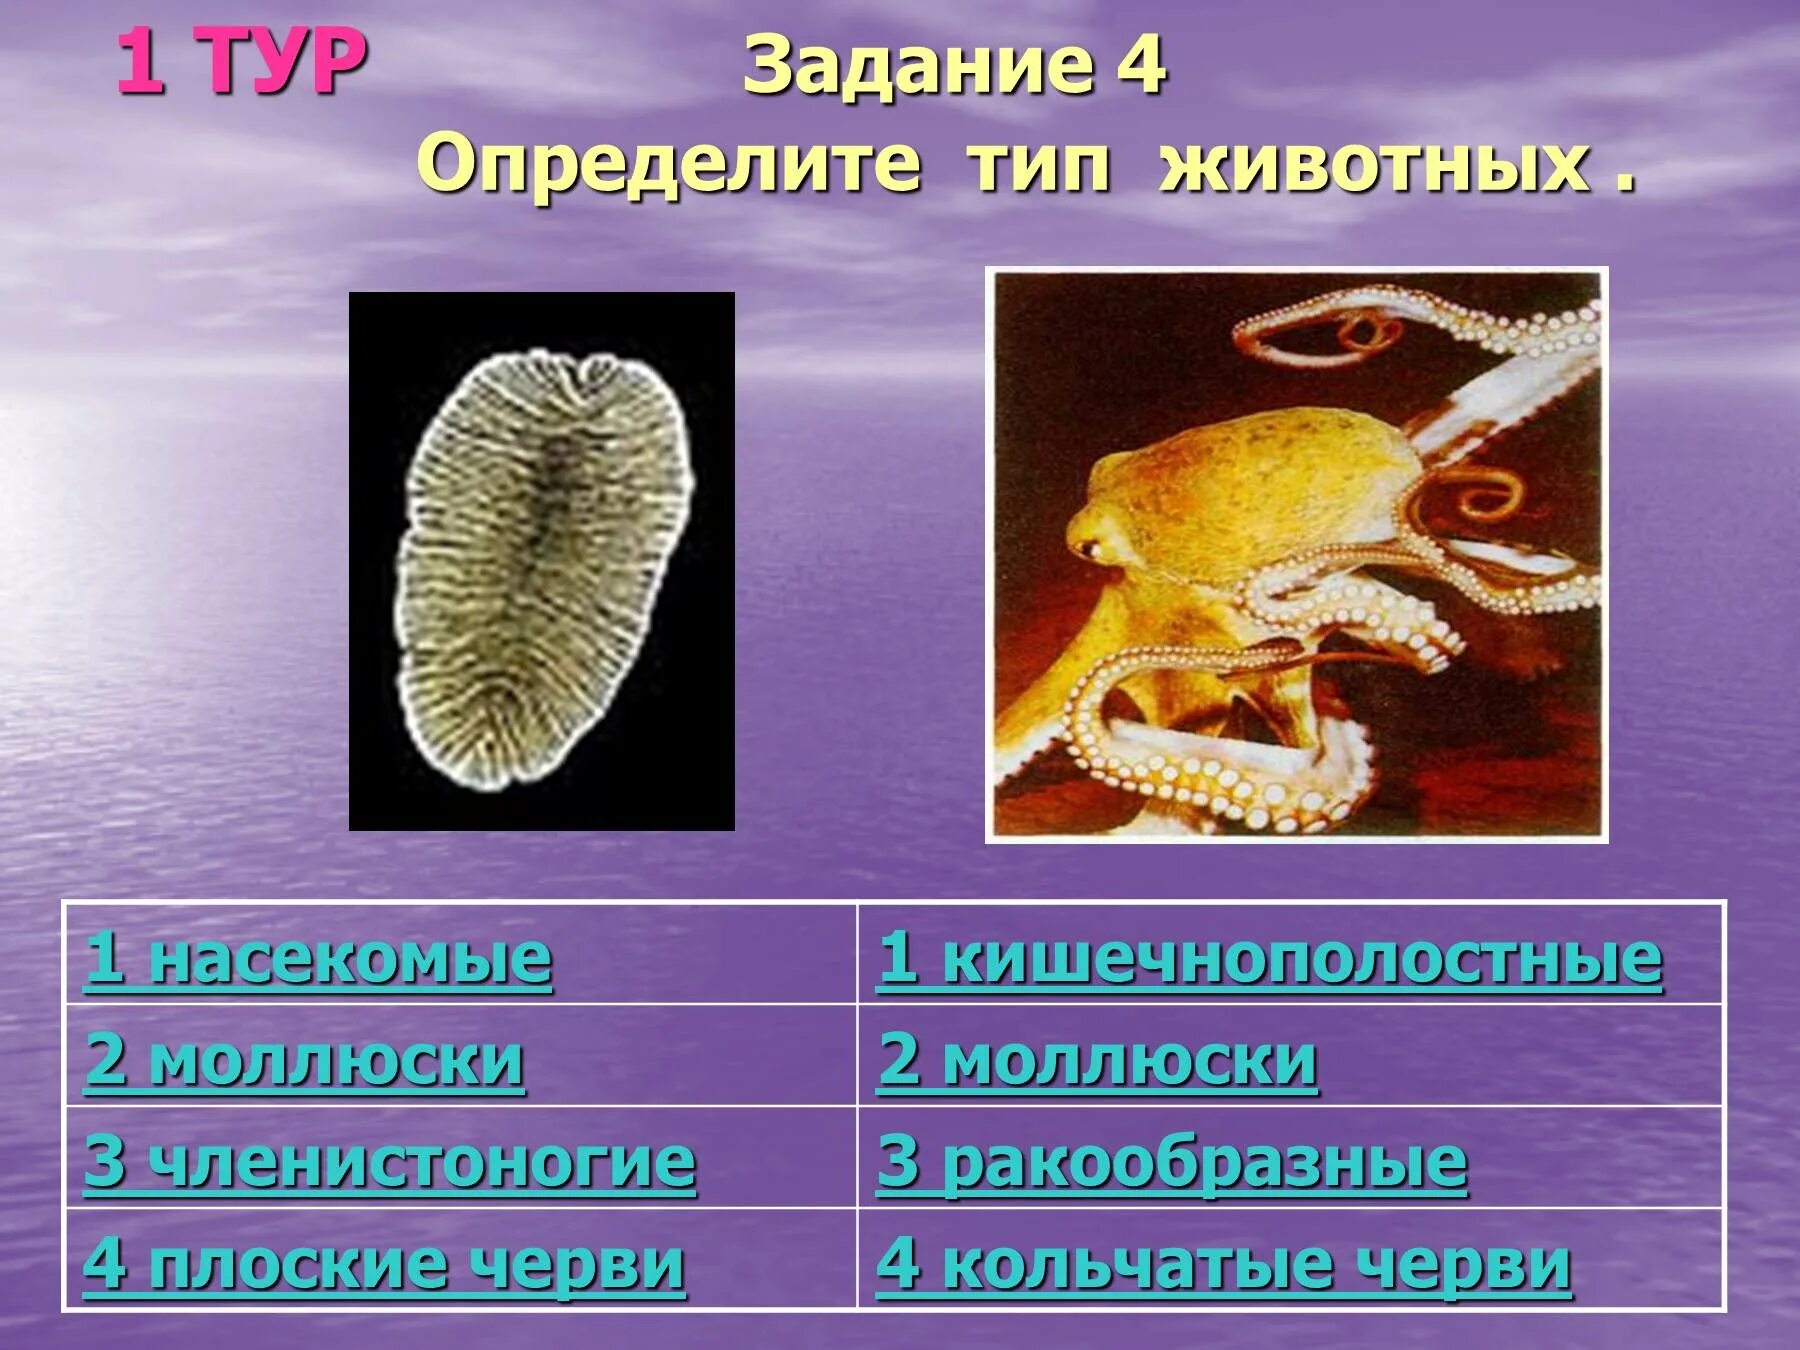 Простейшие кишечнополостные черви. Плоские черви и моллюски. Тип беспозвоночные. Кишечнополостные Членистоногие. Кишечнополостные моллюски Членистоногие.